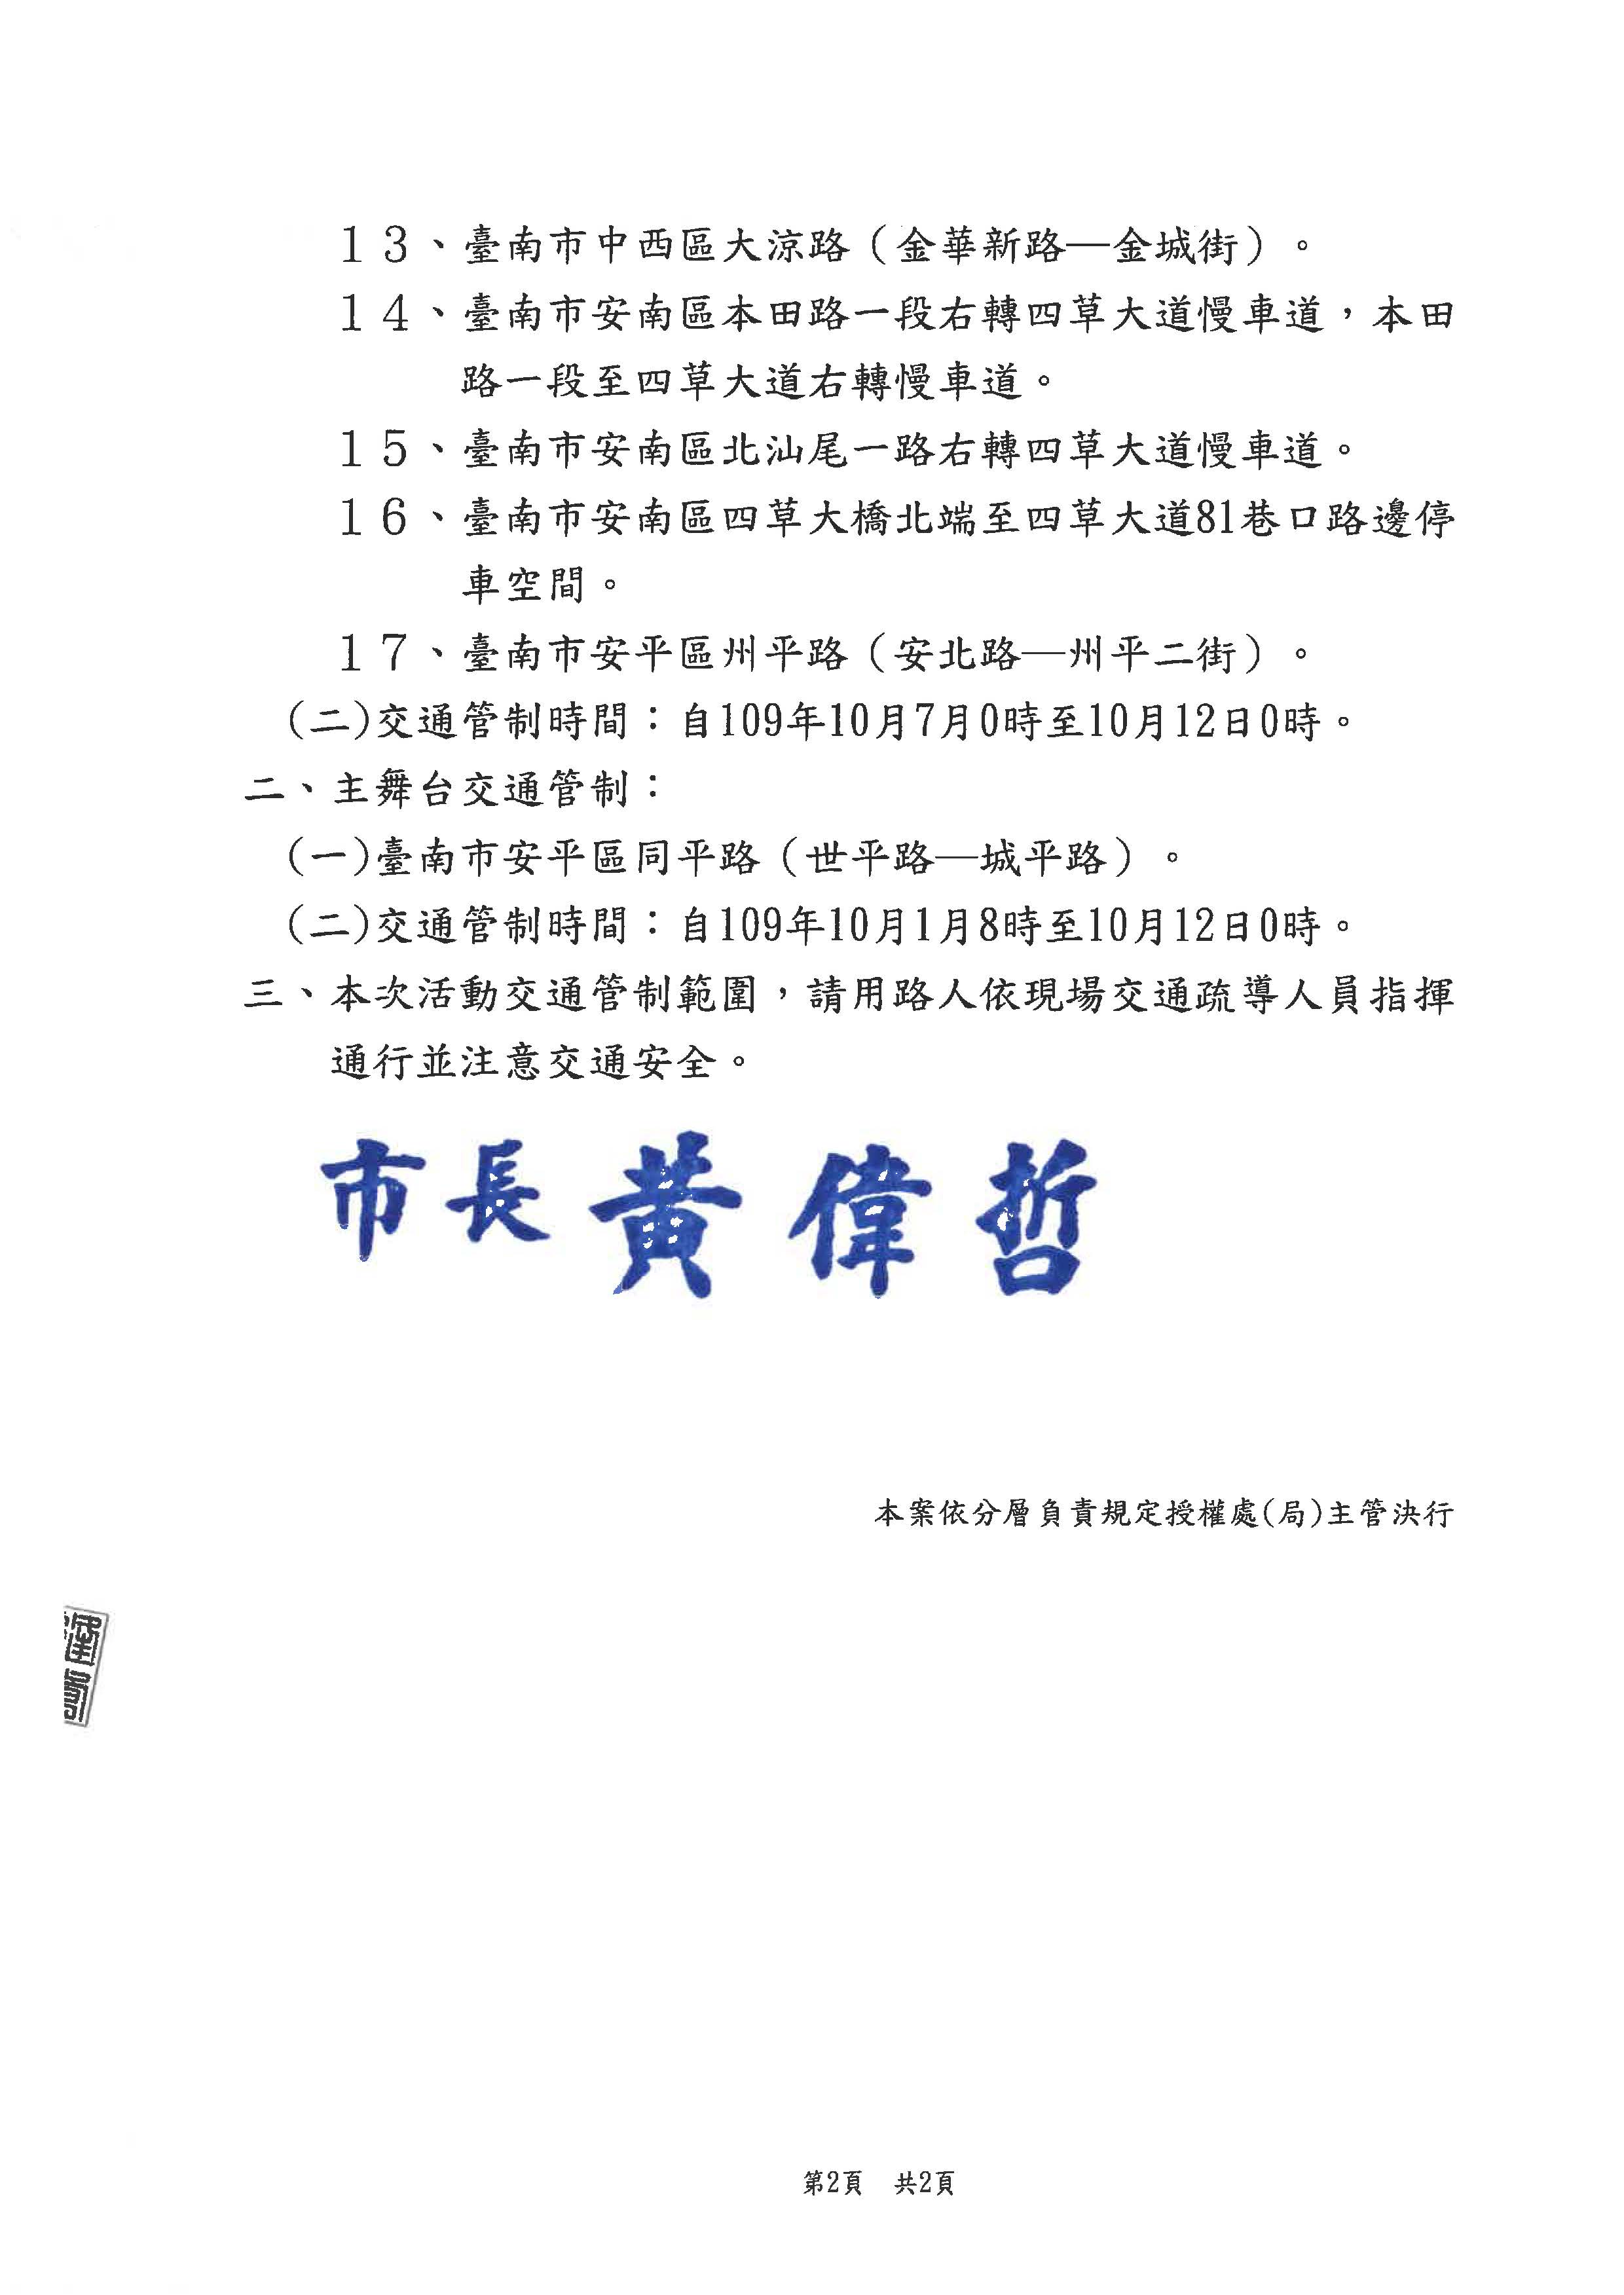 公告「2020國慶焰火在臺南」舞台及市集等設施交通管制措施頁面2